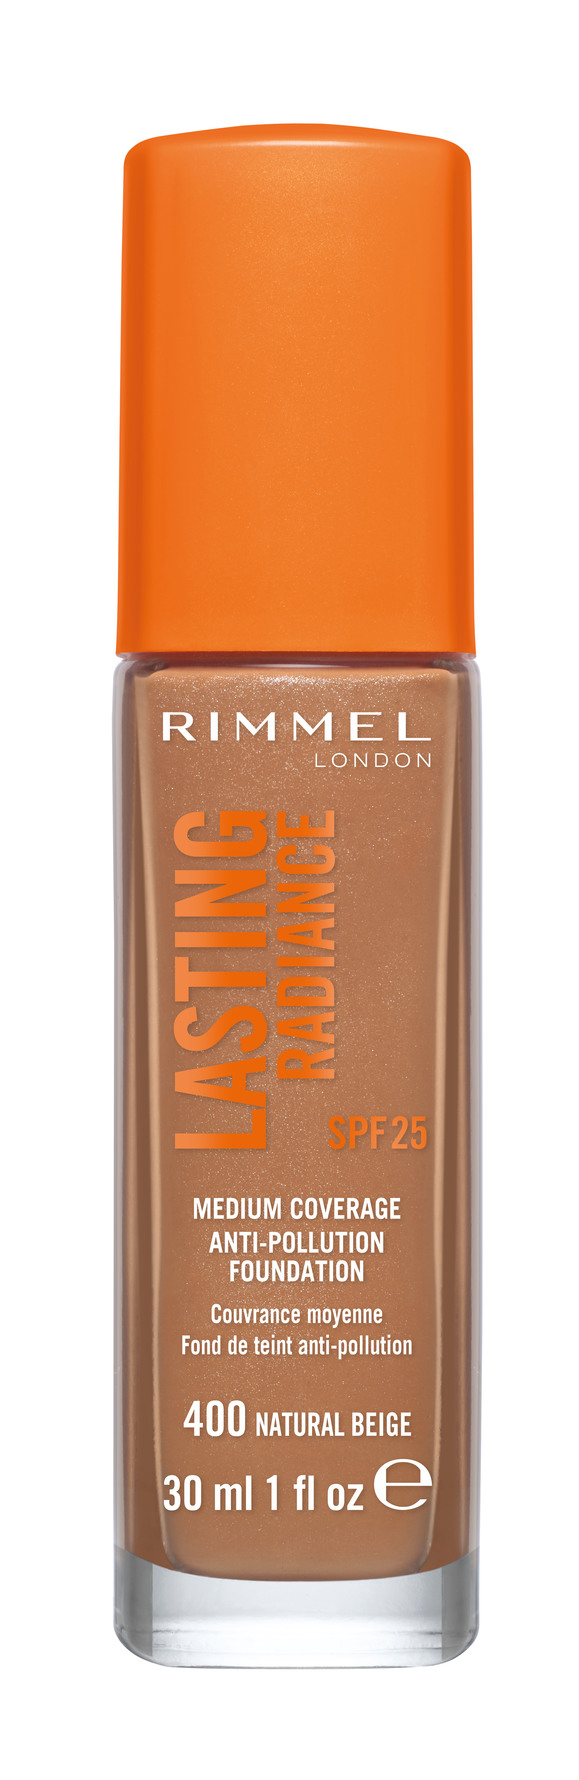 Buy Rimmel Lasting Finish 25H Foundation 400 Natural Beige 